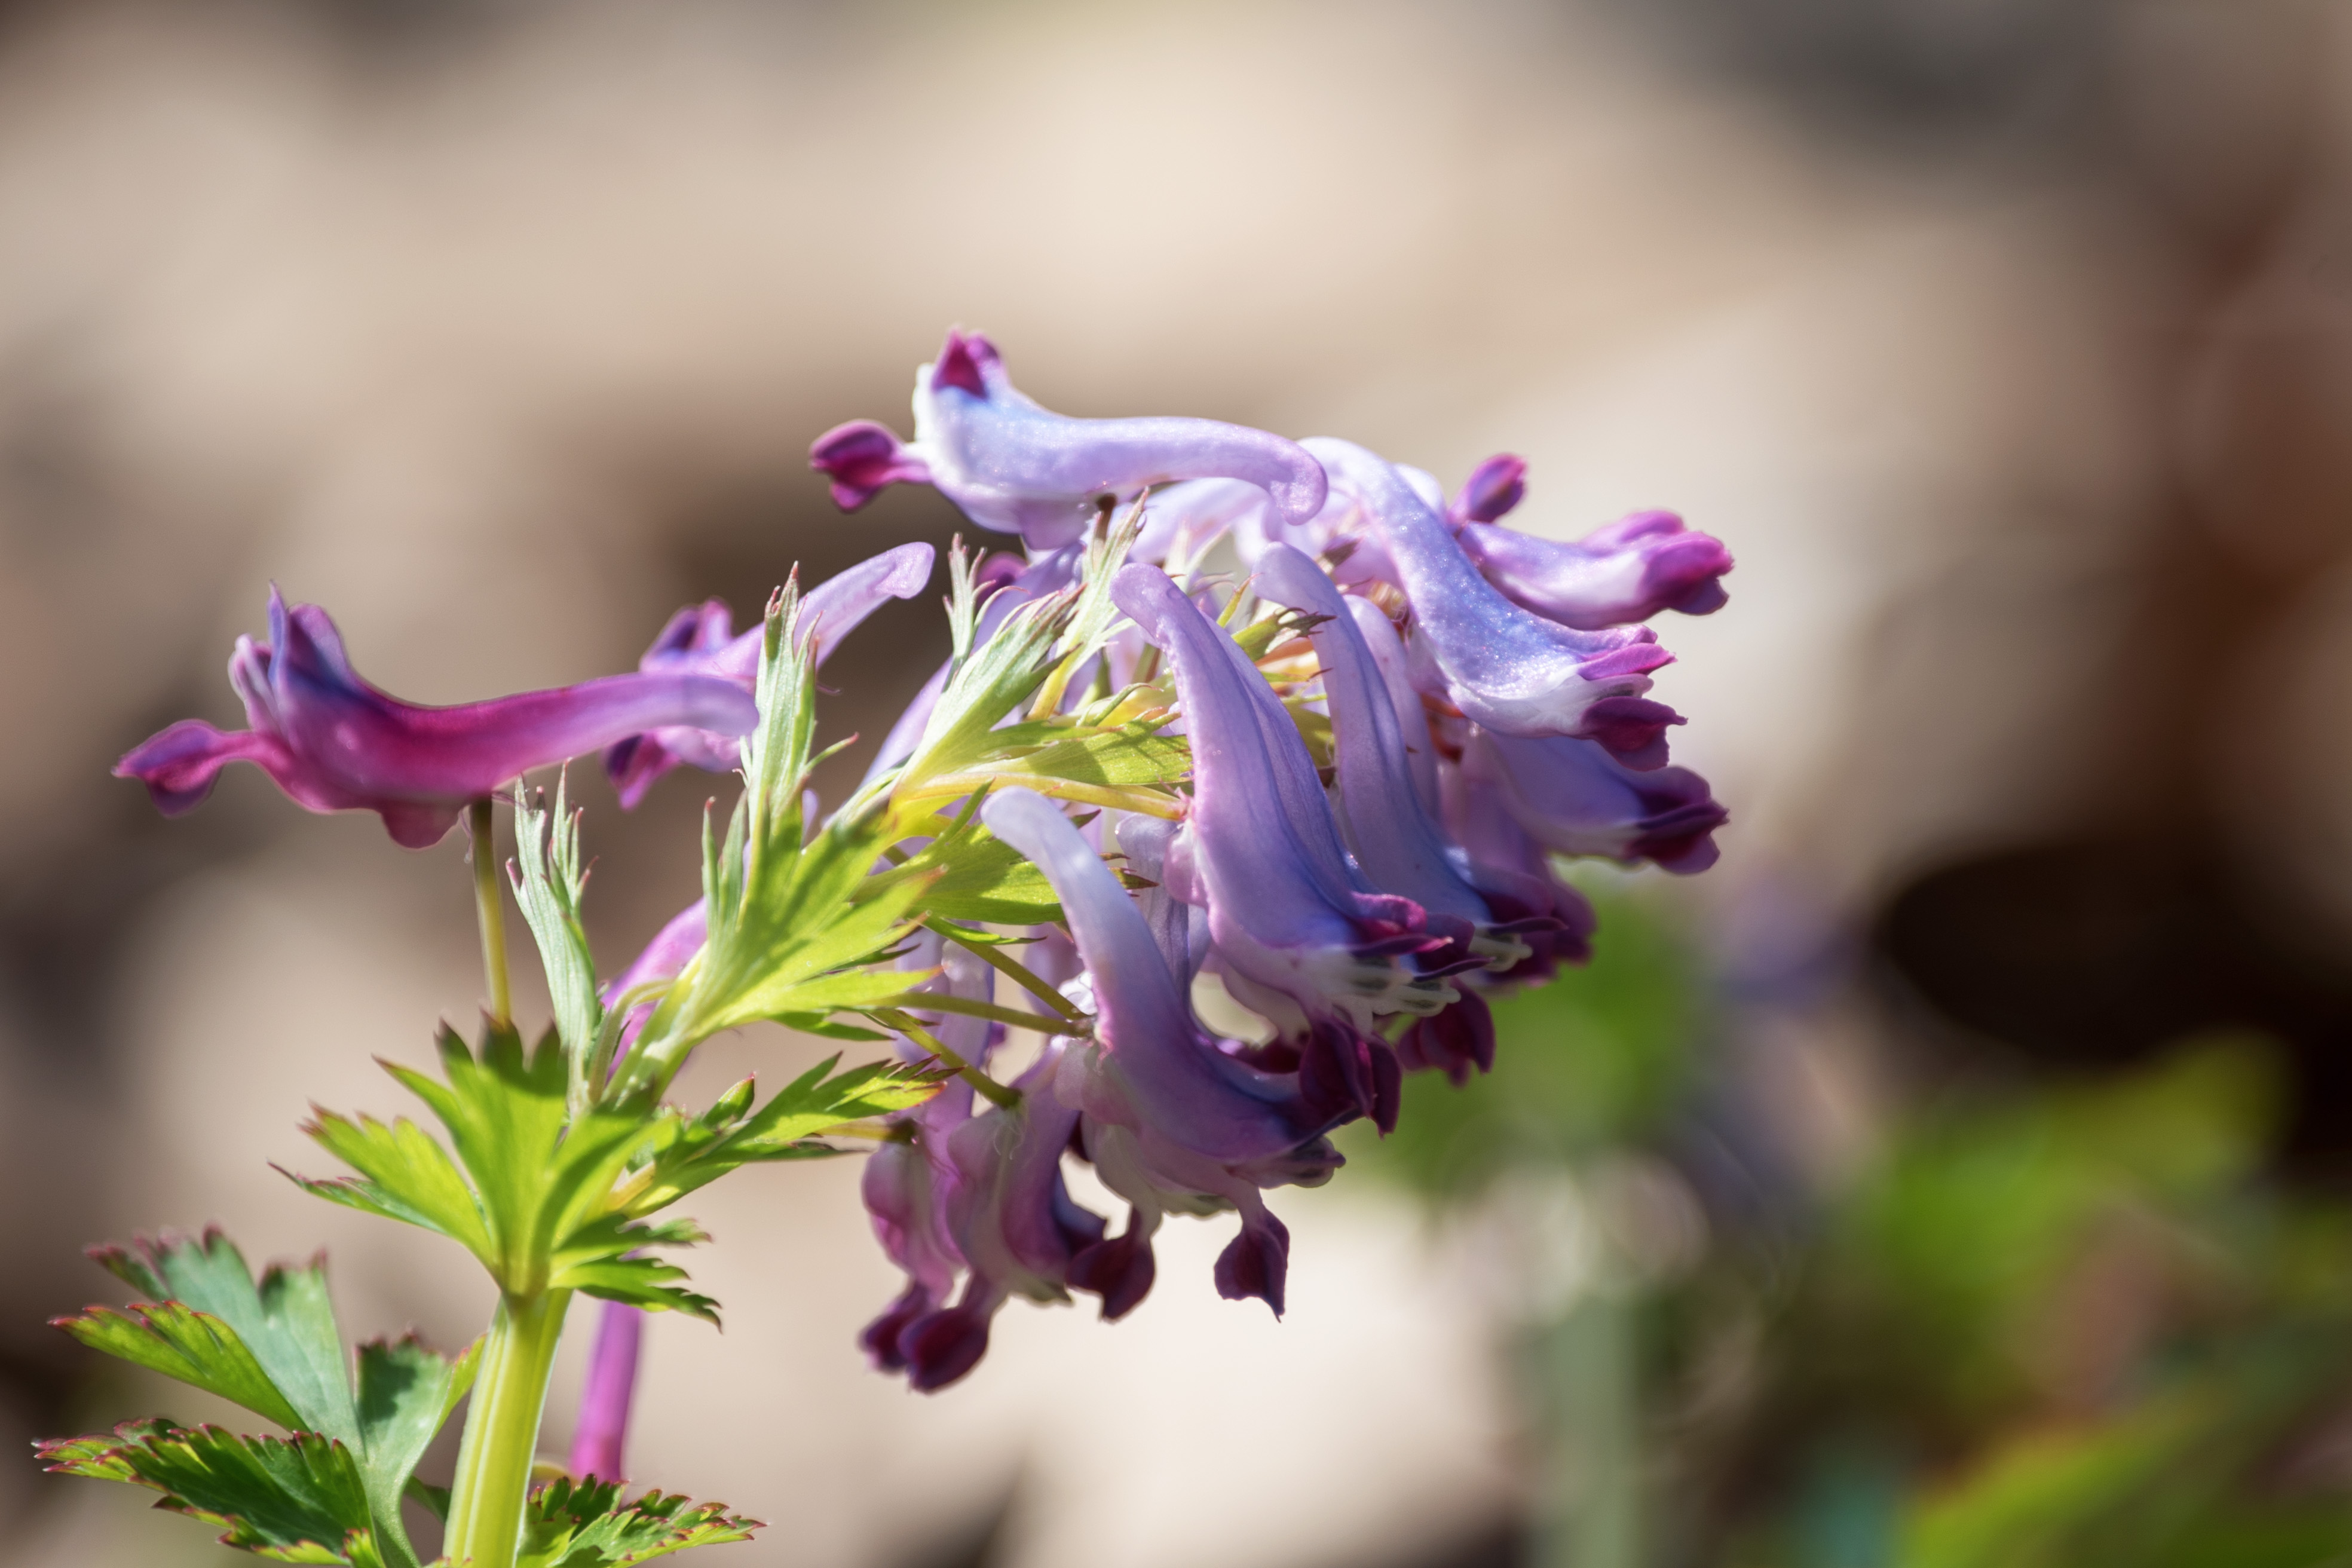 刻叶紫堇是罂粟科紫堇属植物,灰绿色直立草本,高15-60厘米.